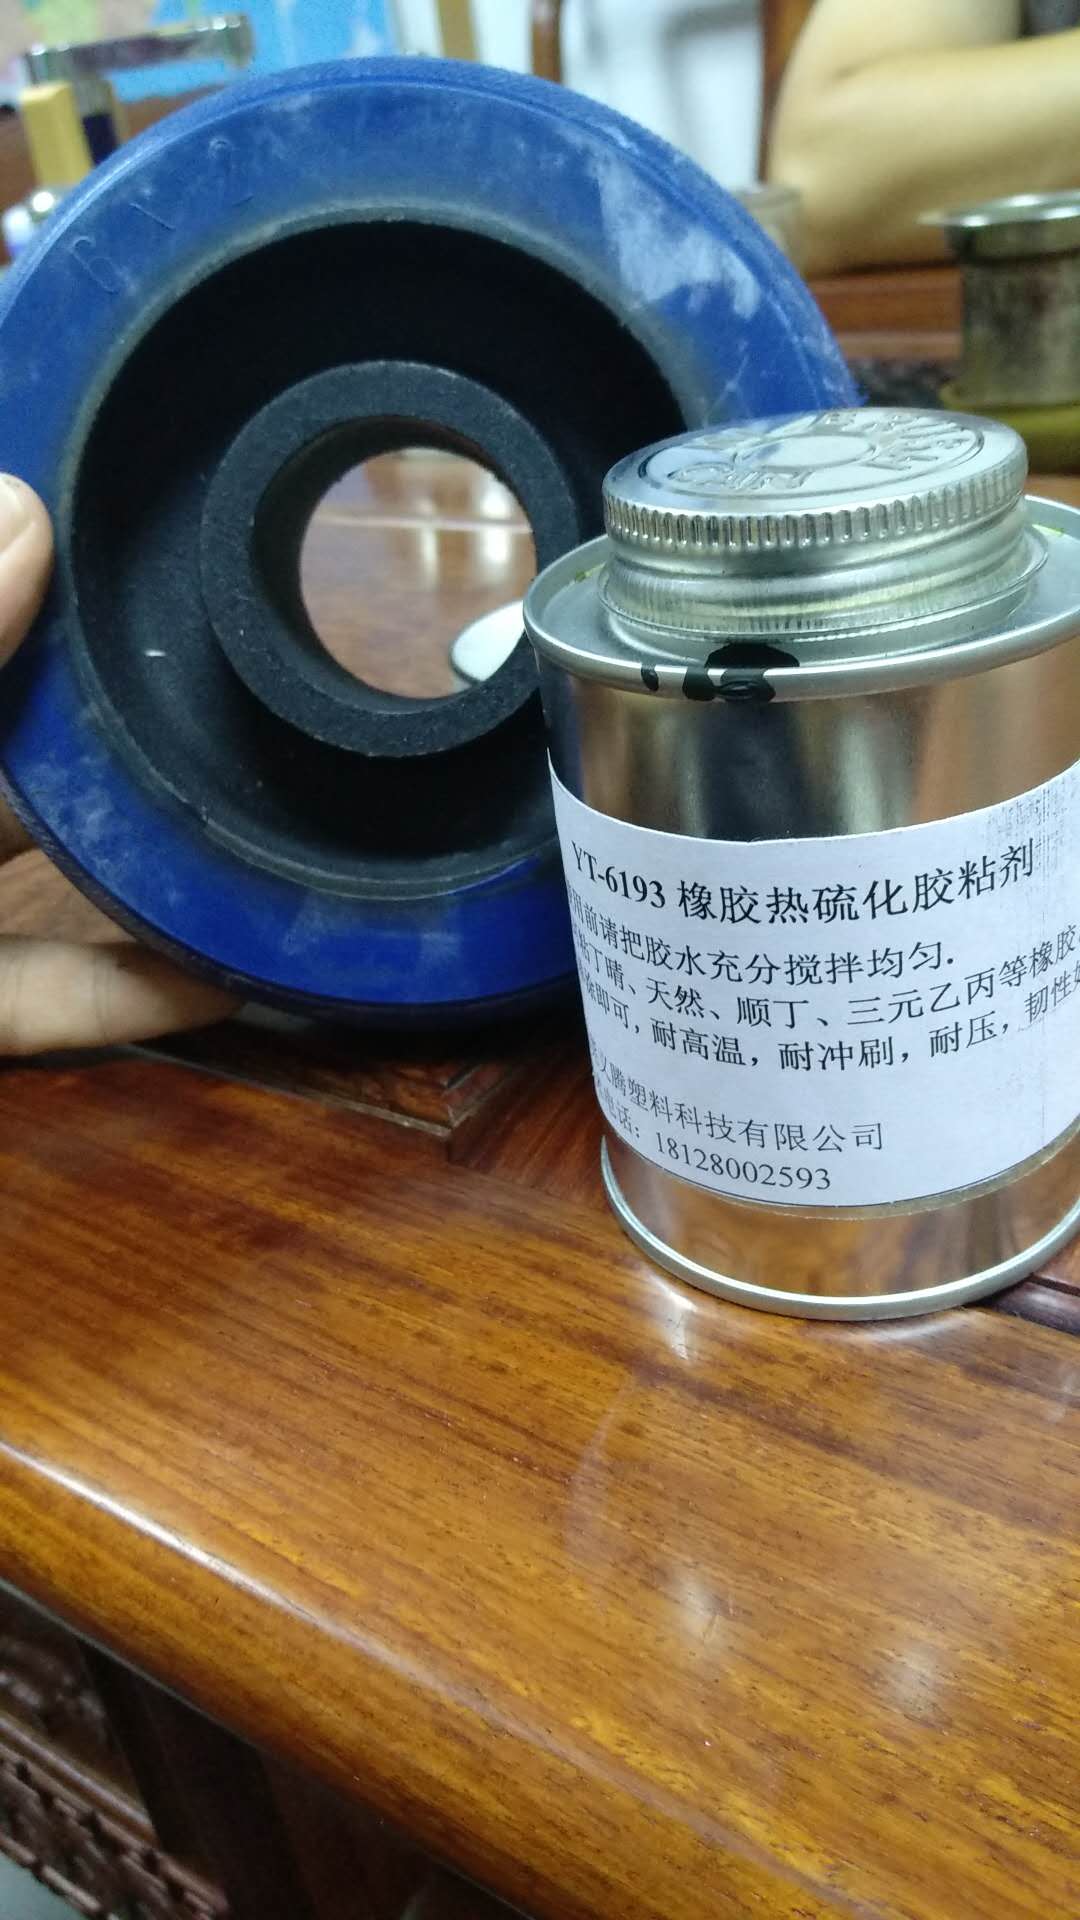 热硫化胶水橡胶与金属粘接包胶单涂王YT-6193